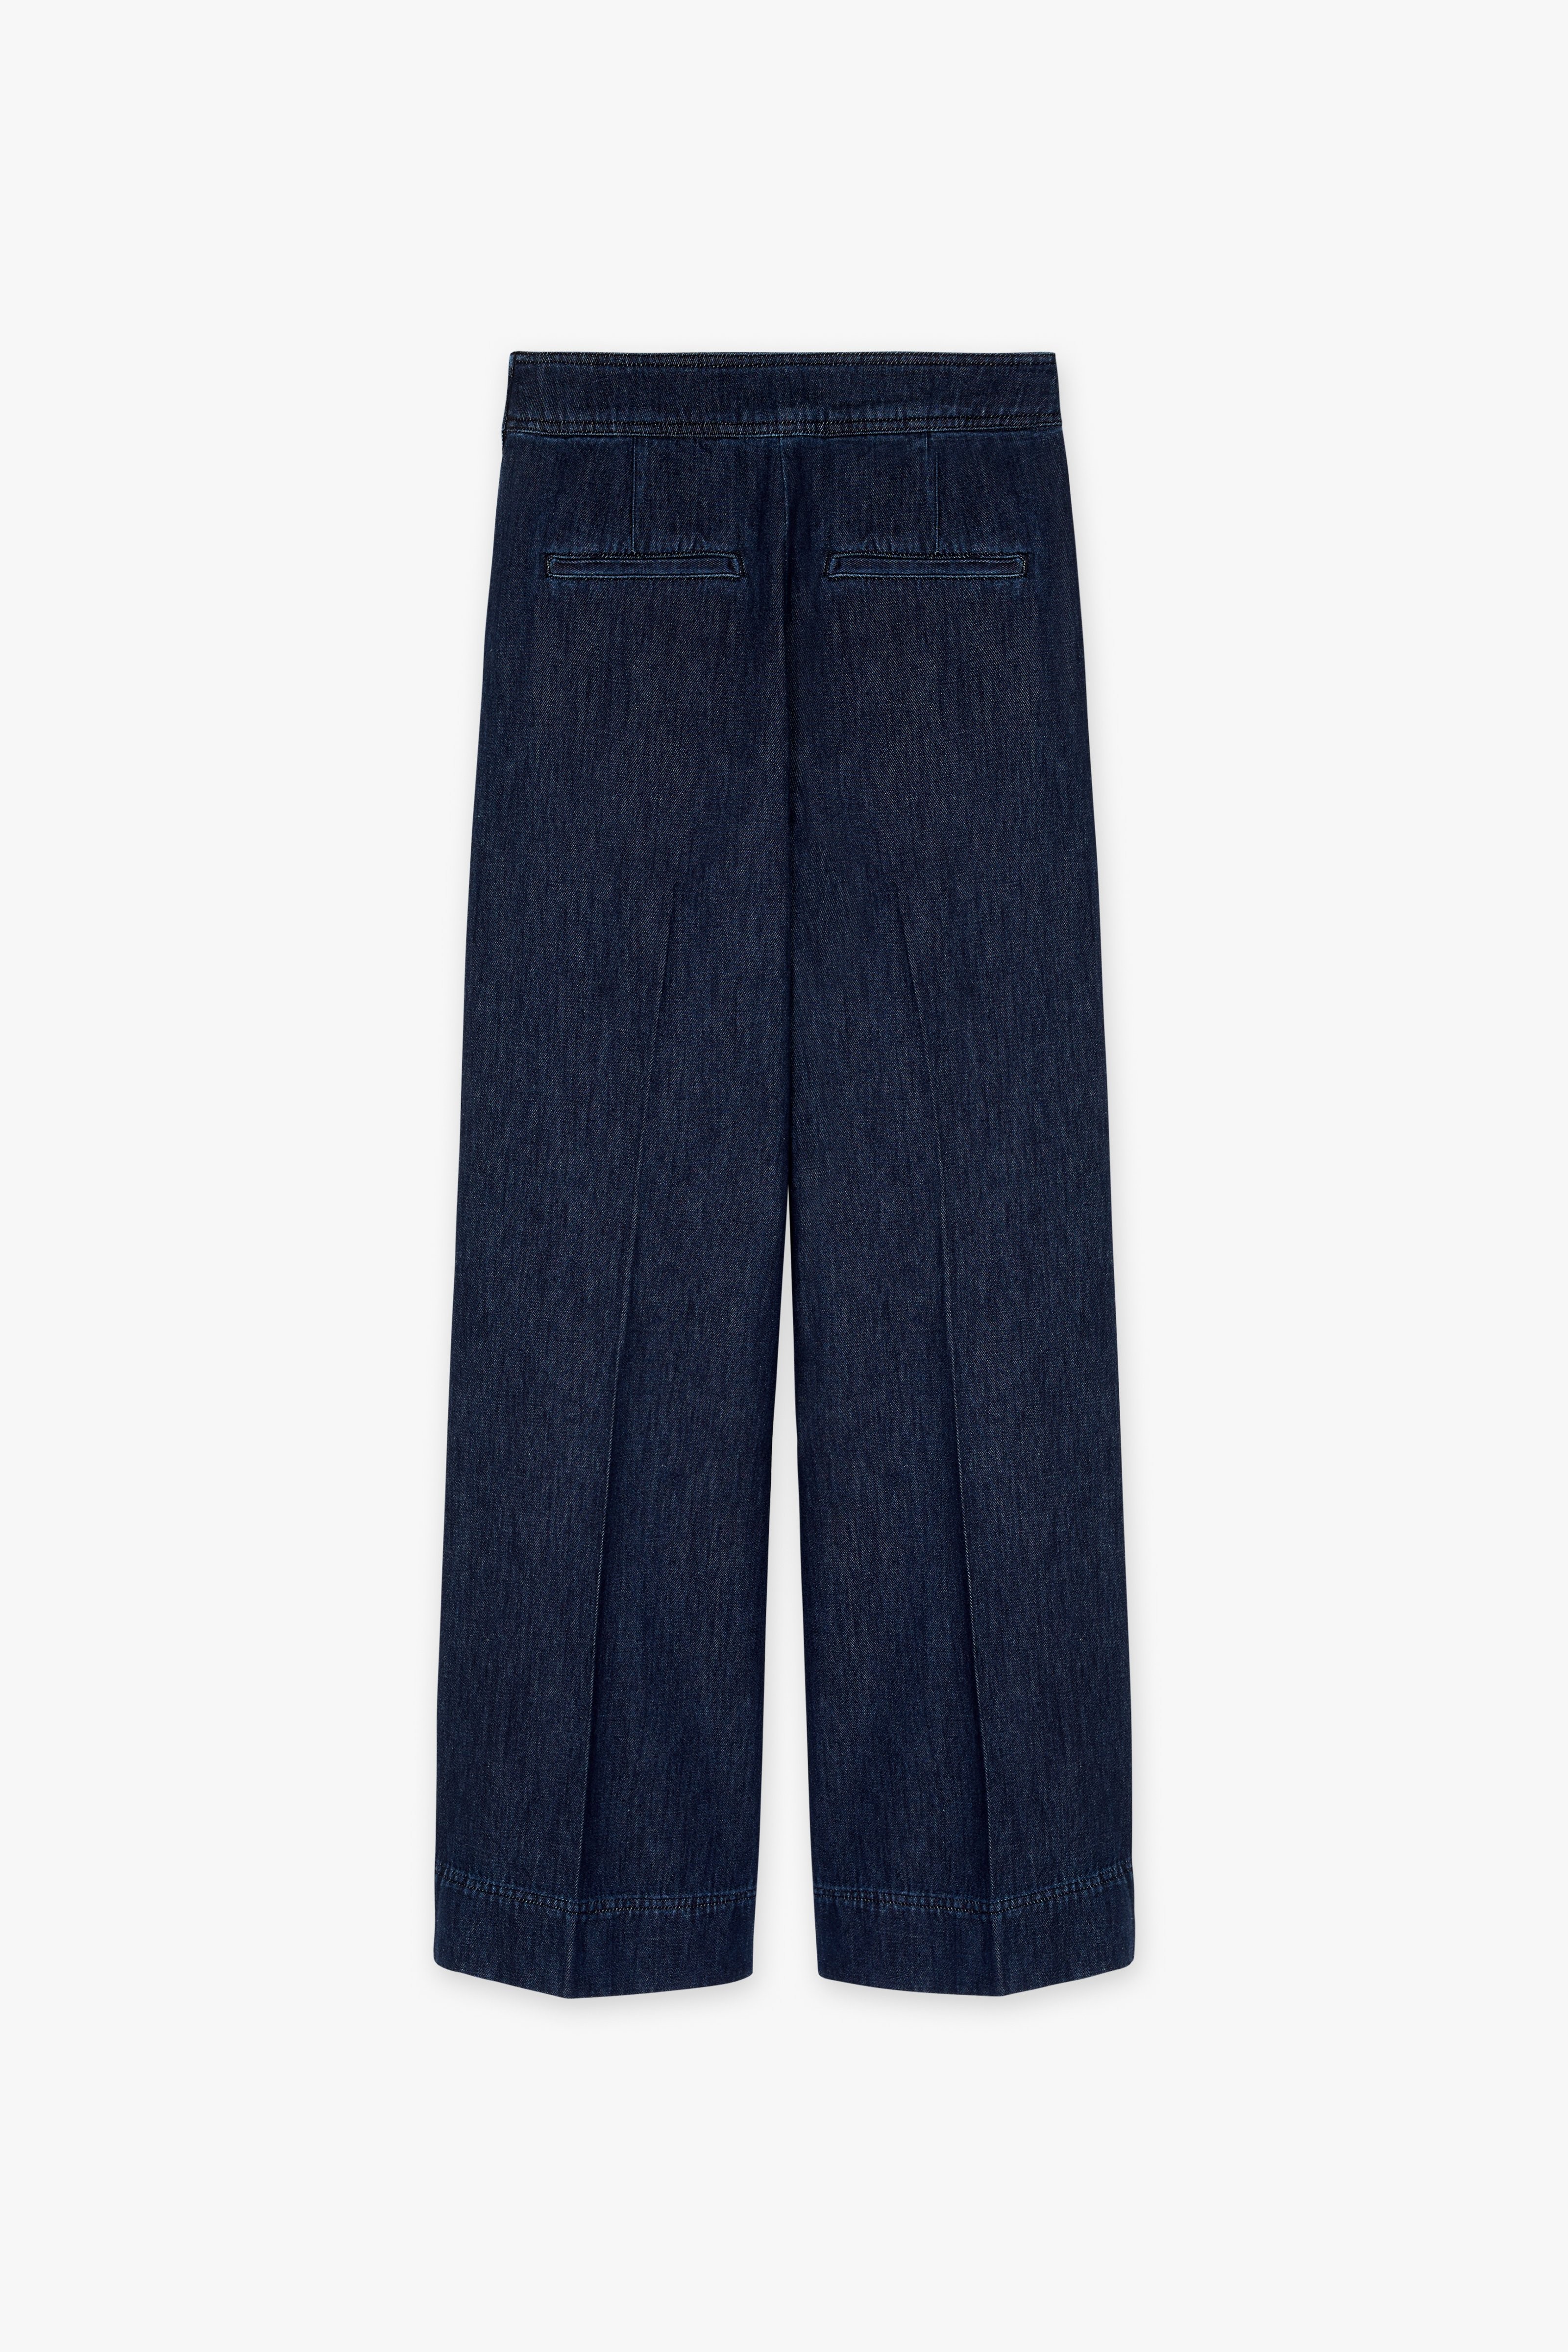 CKS Dames - TAIFOS - jeans longs - bleu foncé